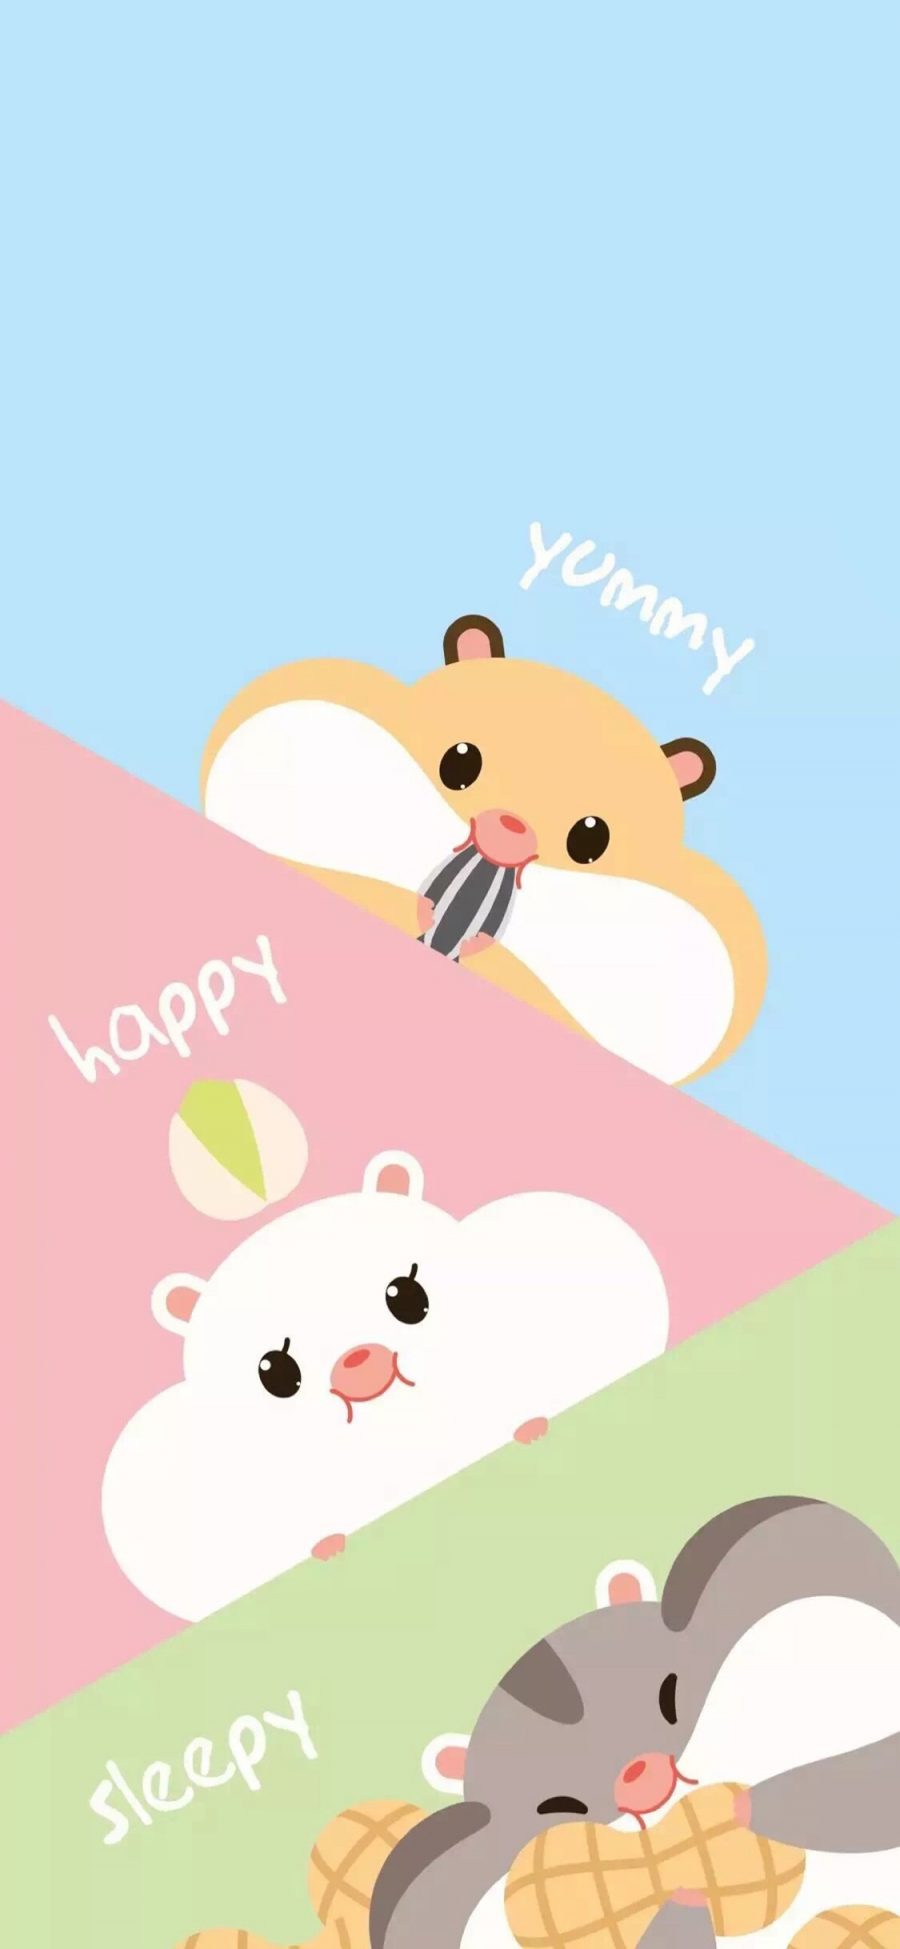 [2436×1125]三只仓鼠 卡通 yummy happy 苹果手机动漫壁纸图片